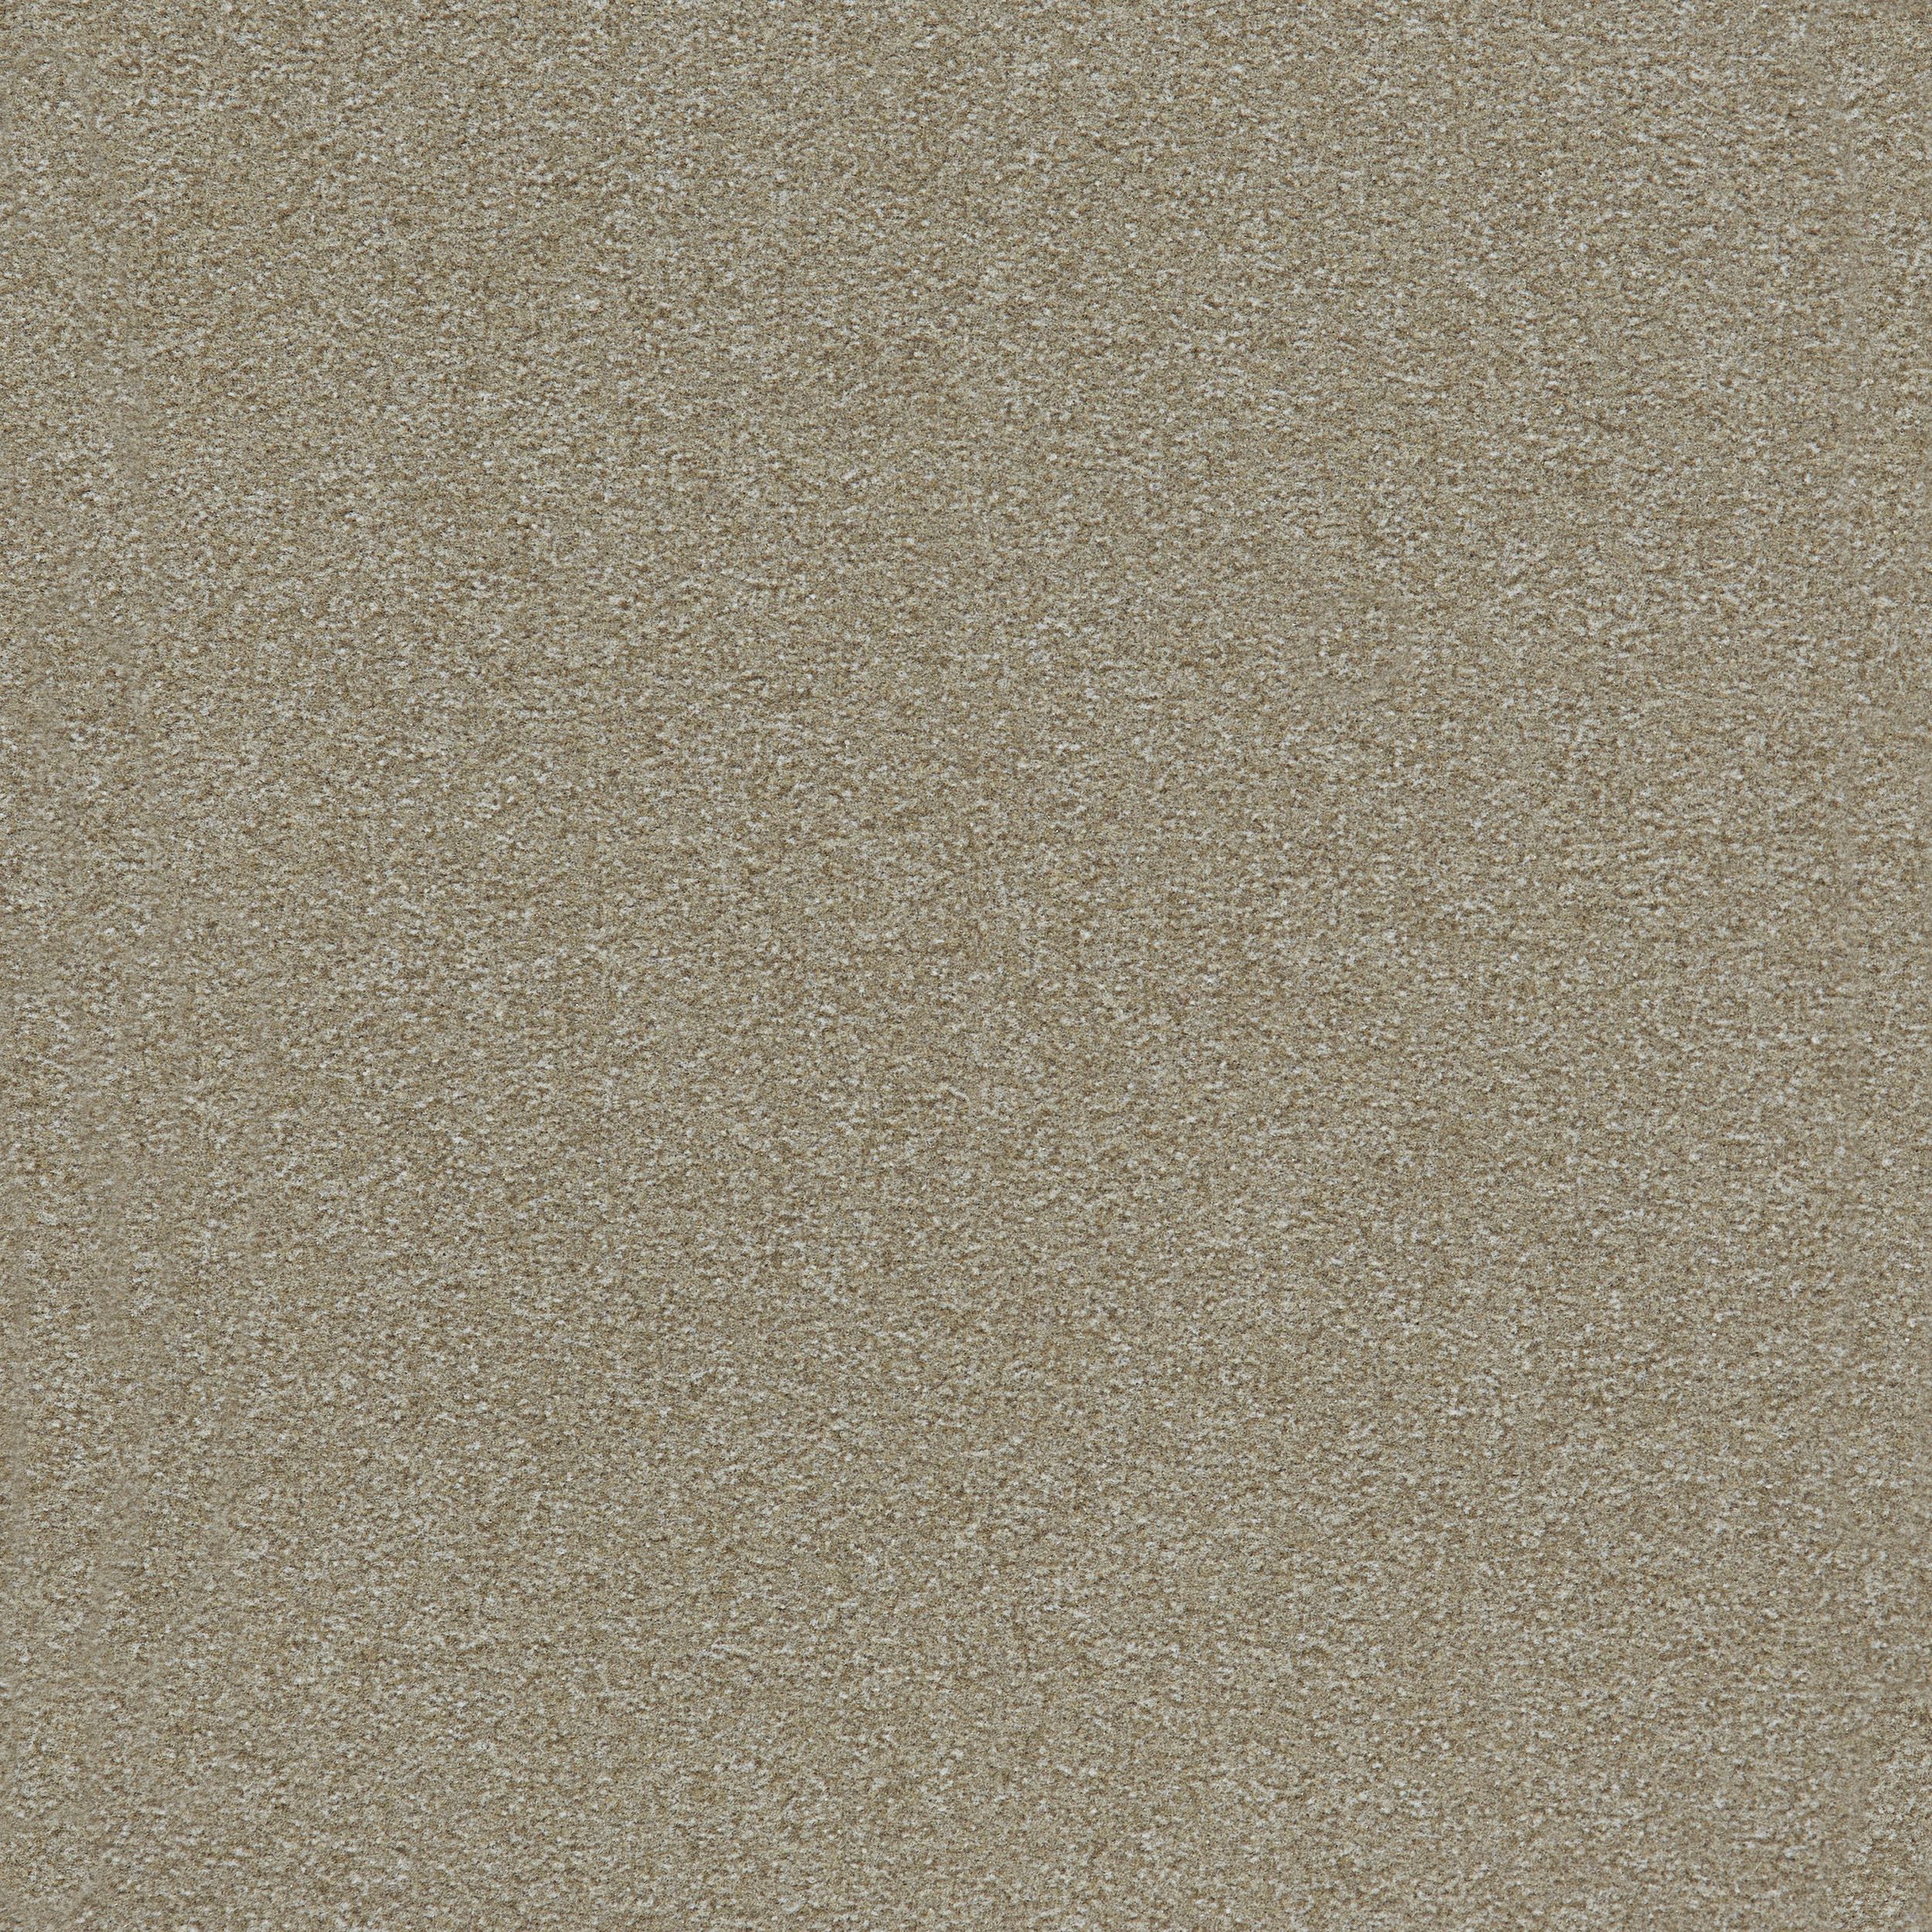 Heuga 725 Carpet Tile In Oyster image number 9